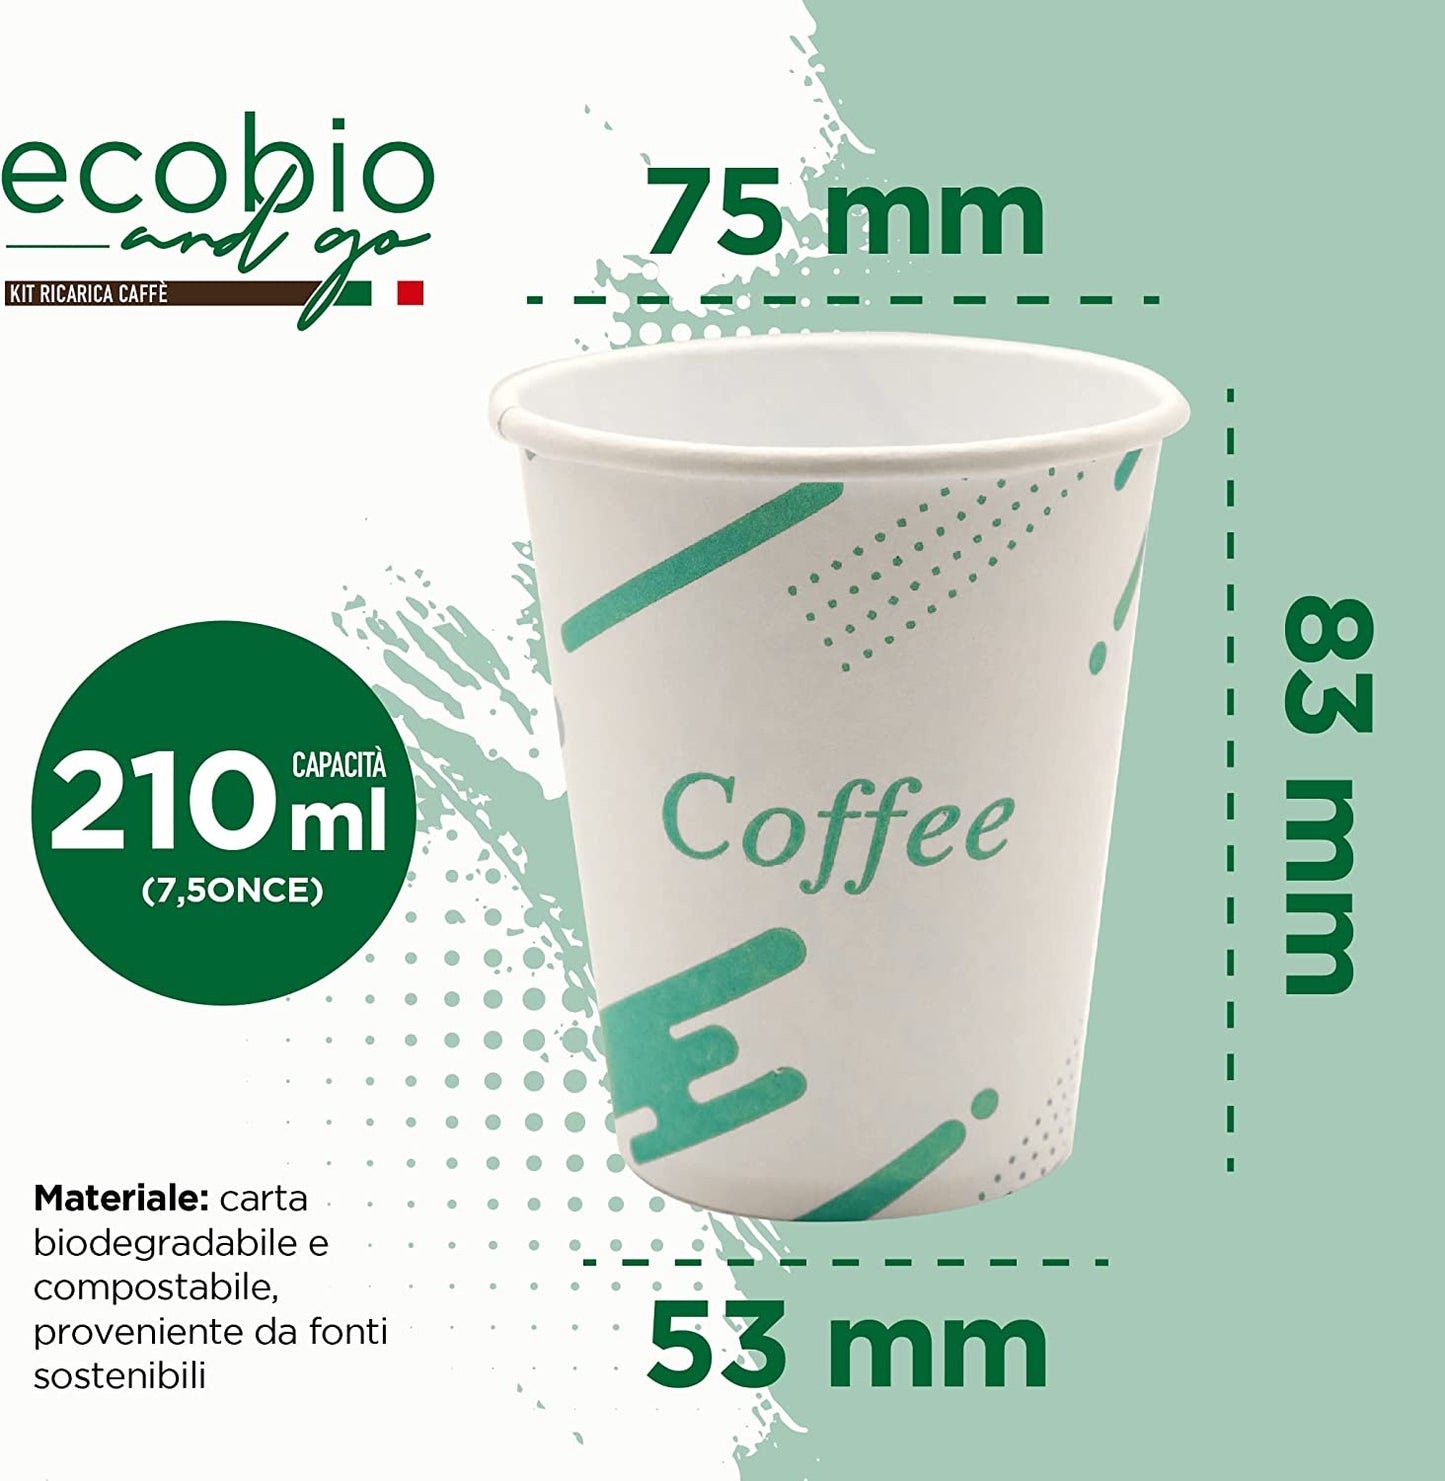 ECOBIO and GO 1000 Bicchieri di Carta 210ml, Bicchieri Acqua Biodegradabili e Compostabili, Bicchieri Monouso Senza Plastica per Te' e Caffè (200, 210 ML)